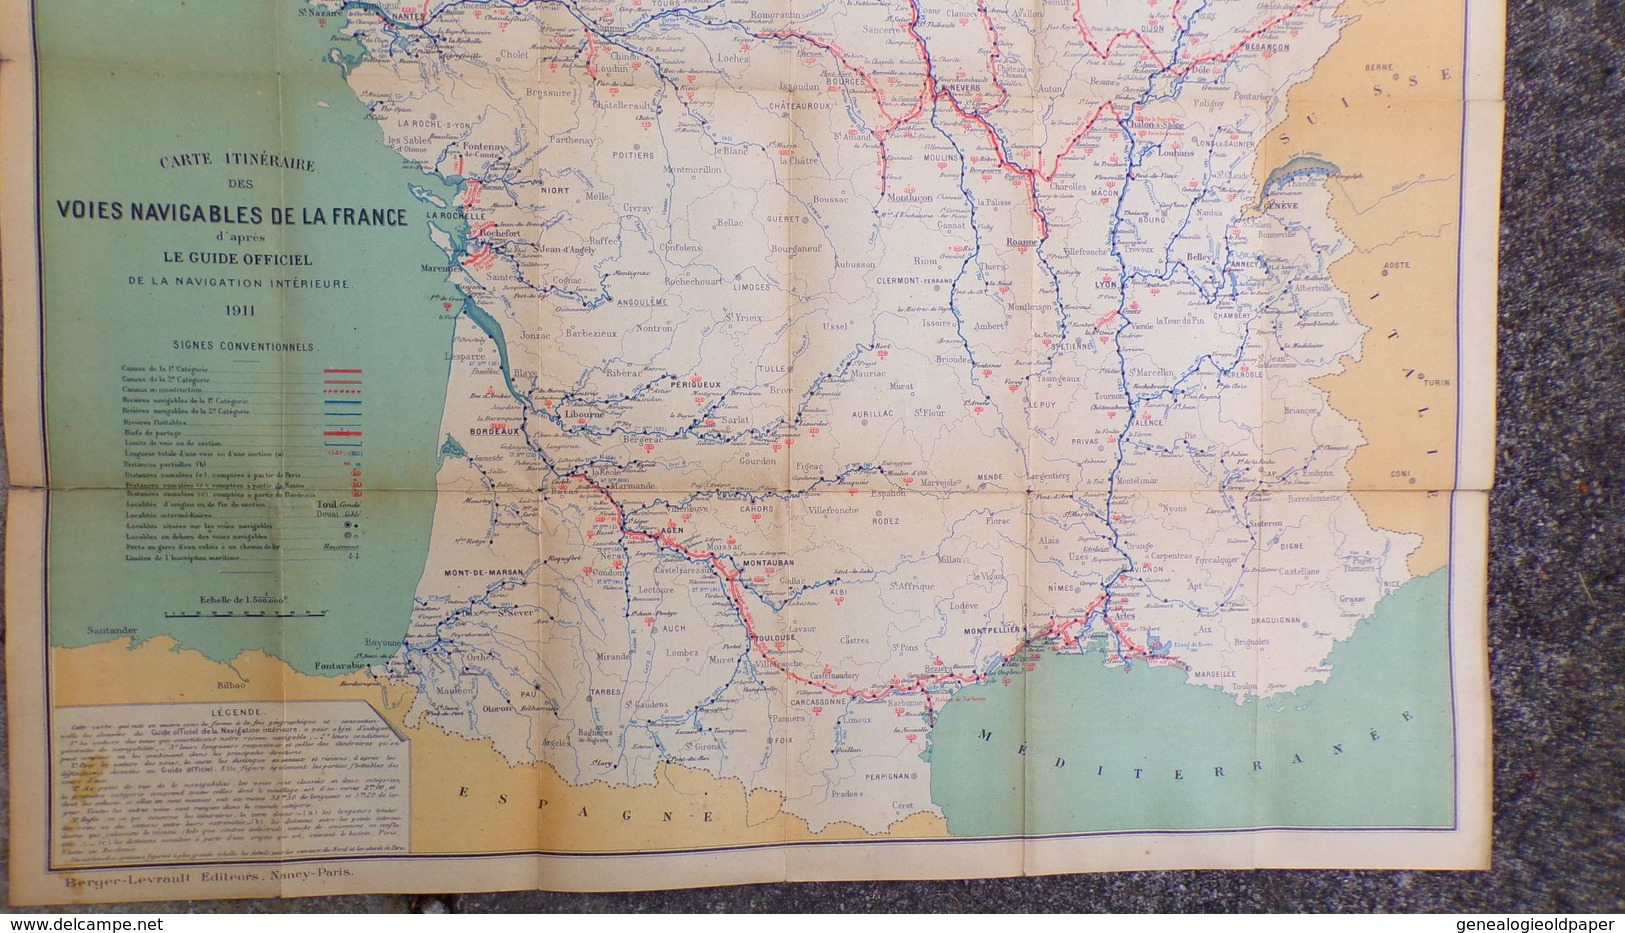 CARTE MARINE VOIES NAVIGABLES FRANCE- 1911-MINISTERE TRAVAUX PUBLICS POSTES TELEGRAPHES-BERGER LEVRAULT PARIS NANCY - Nautical Charts